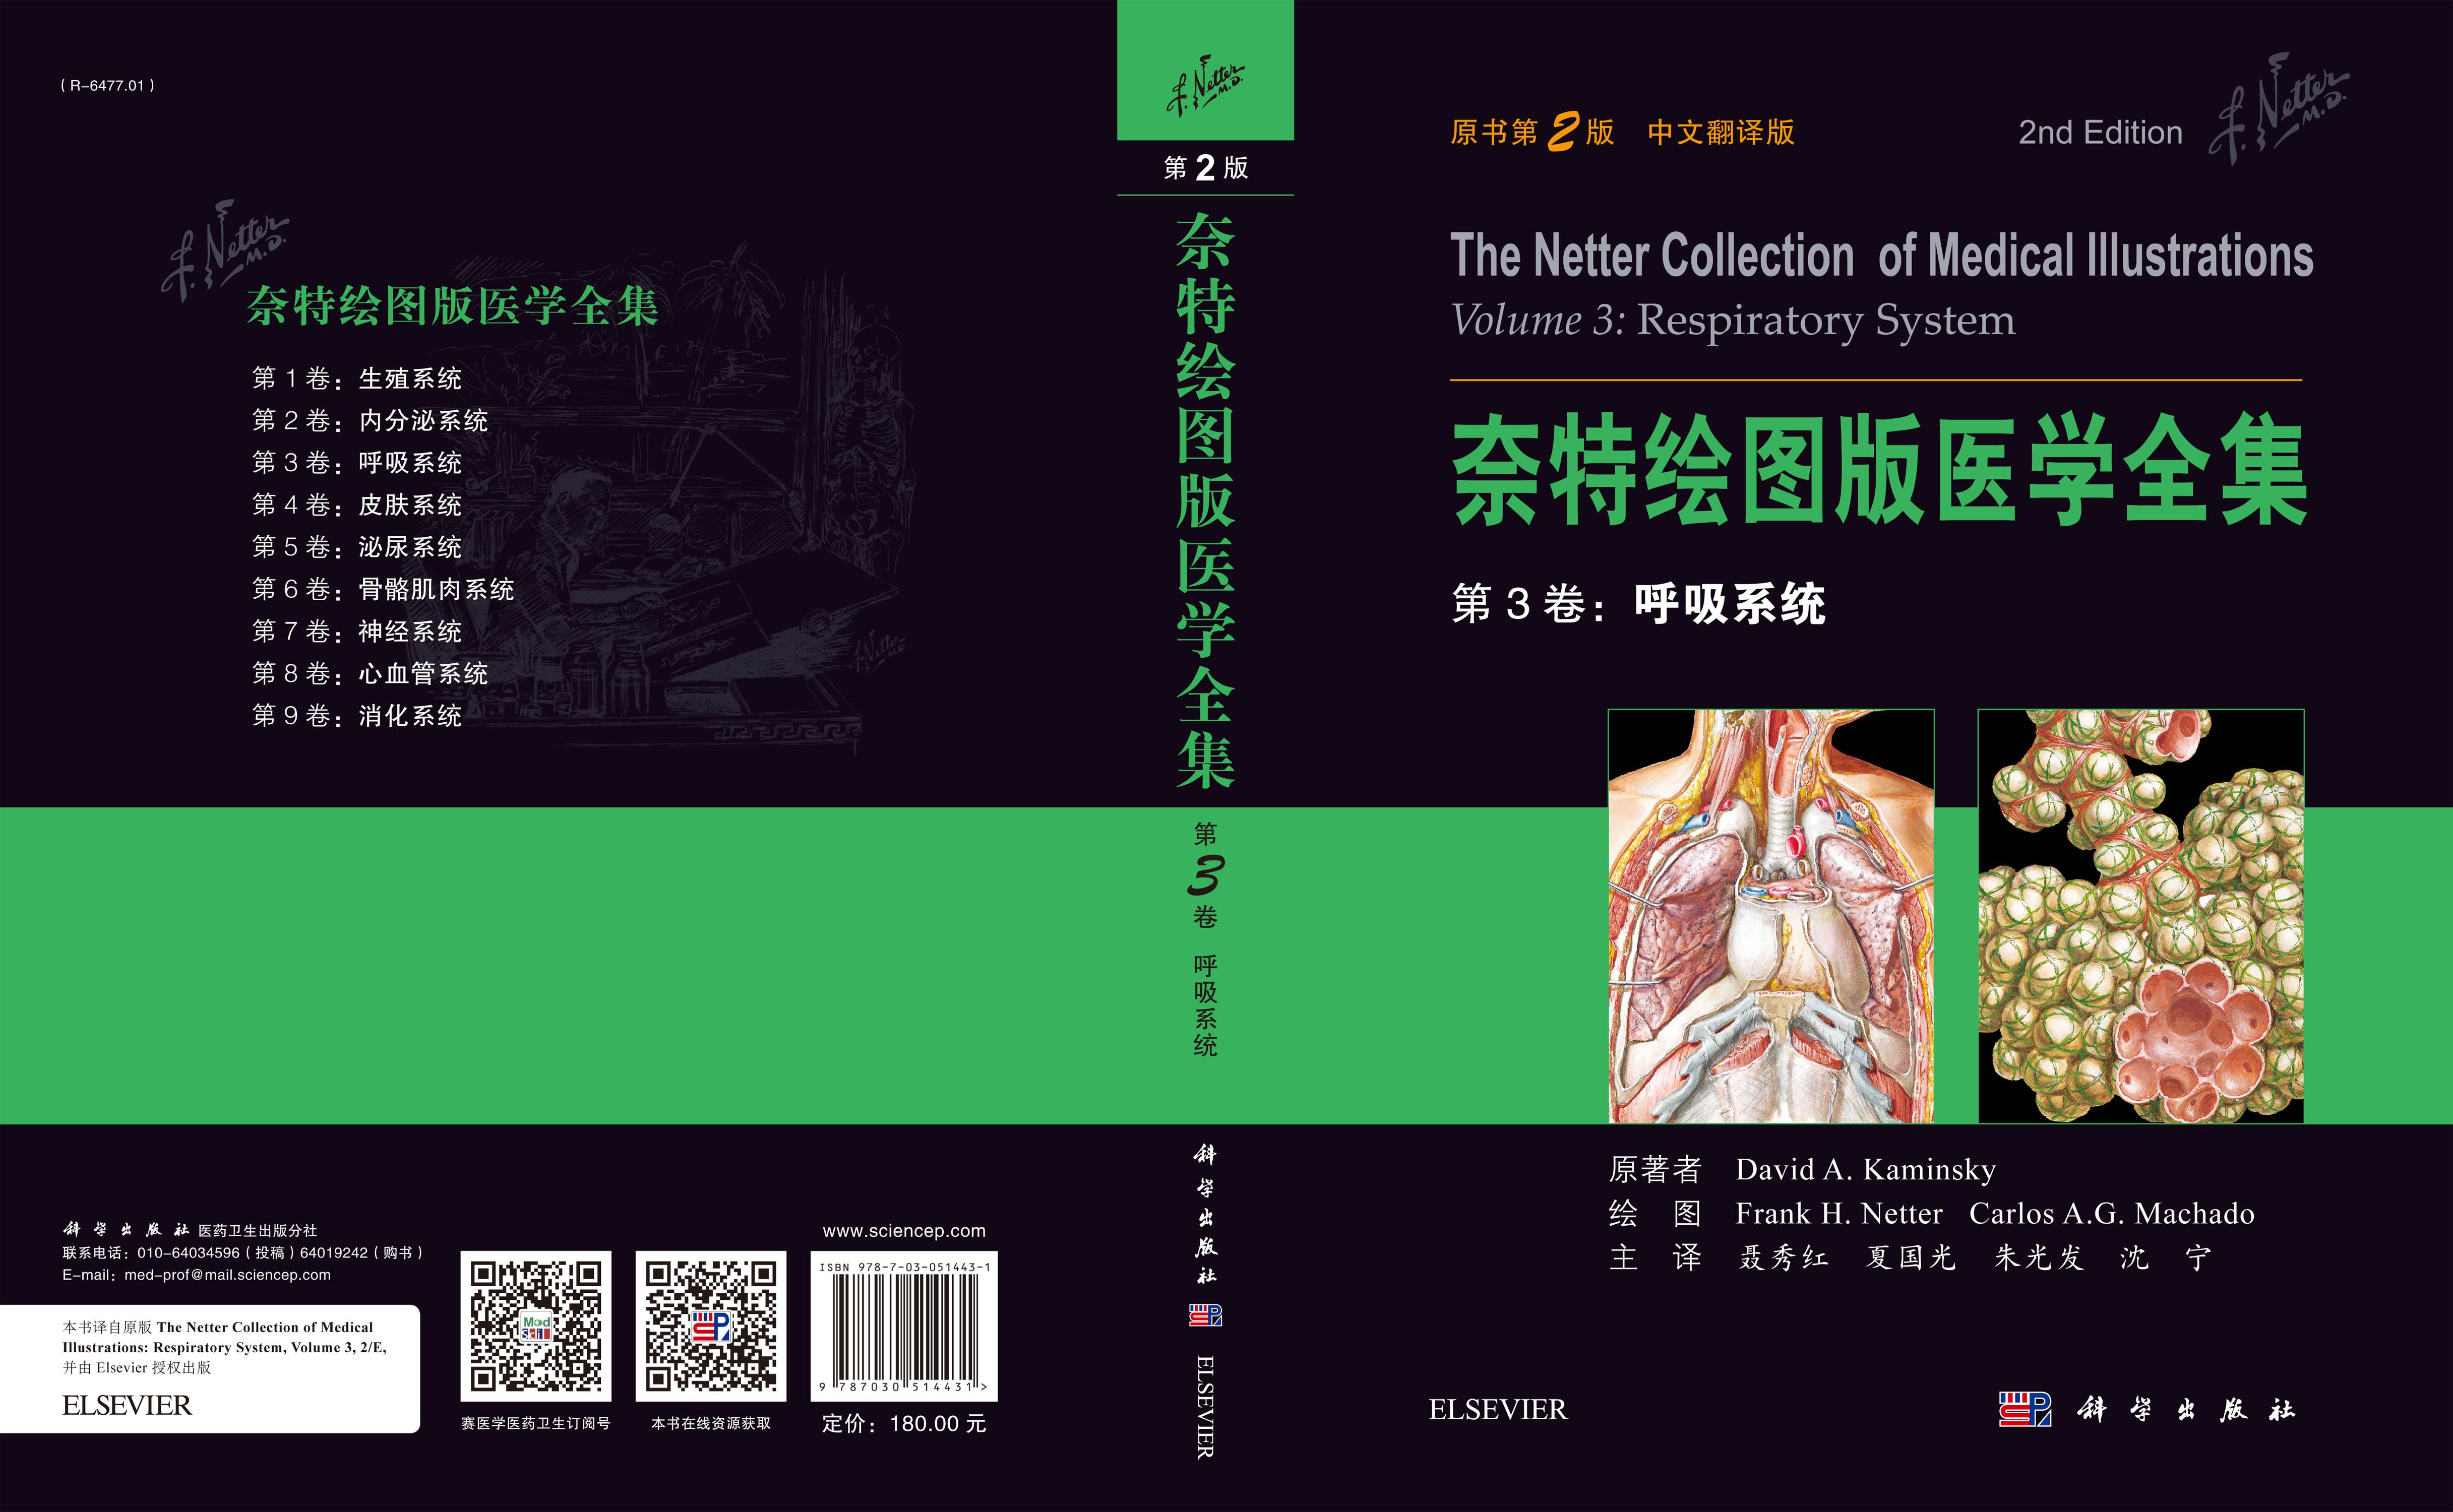 奈特绘图版医学全集——第3卷：呼吸系统（中文翻译版，原书第2版）